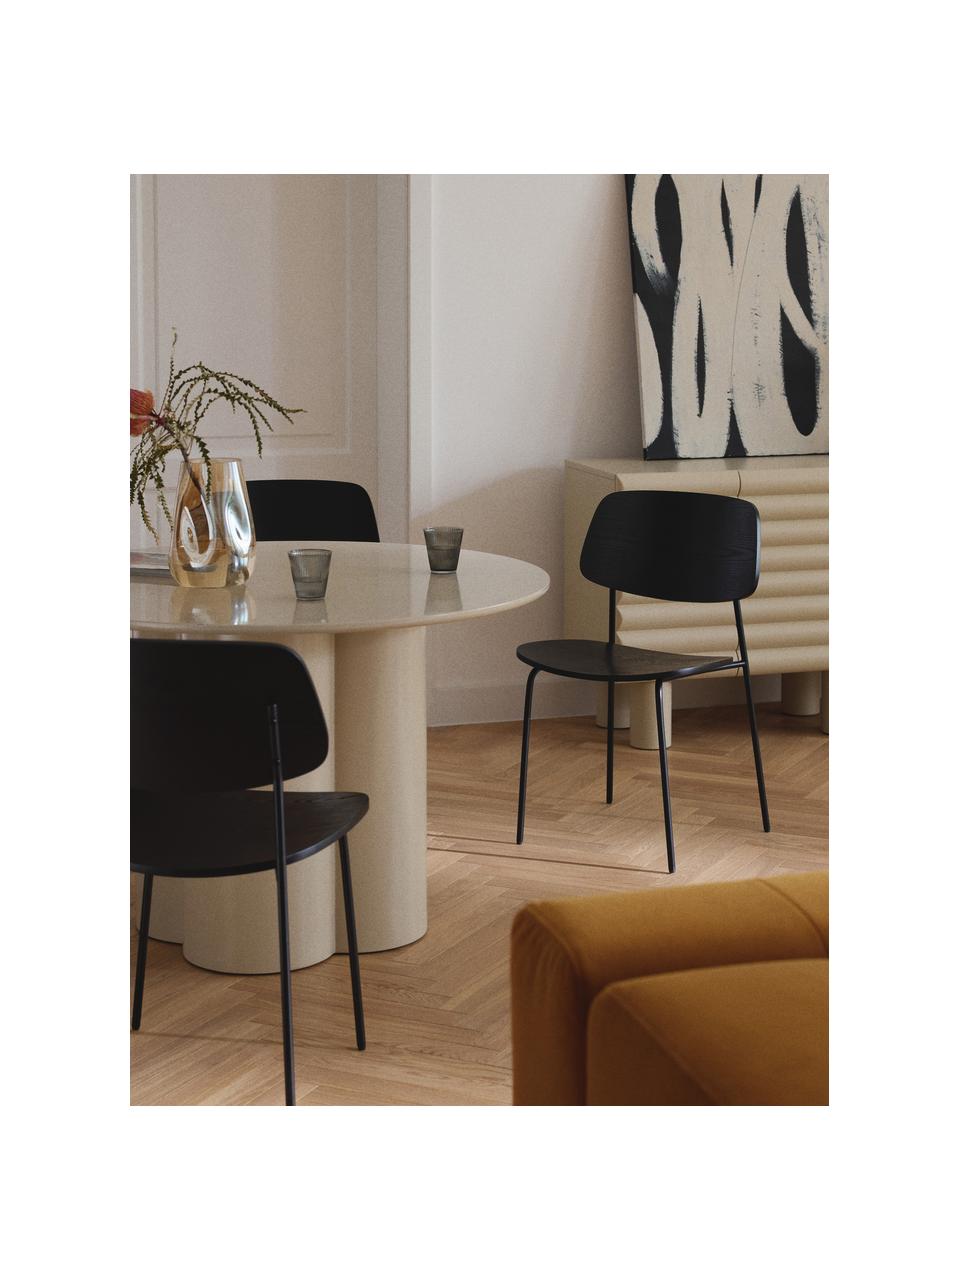 Holzstühle Nadja, 2 Stück, Sitzfläche: Sperrholz mit Eschenholzf, Beine: Metall, pulverbeschichtet, Schwarz, B 50 x T 53 cm